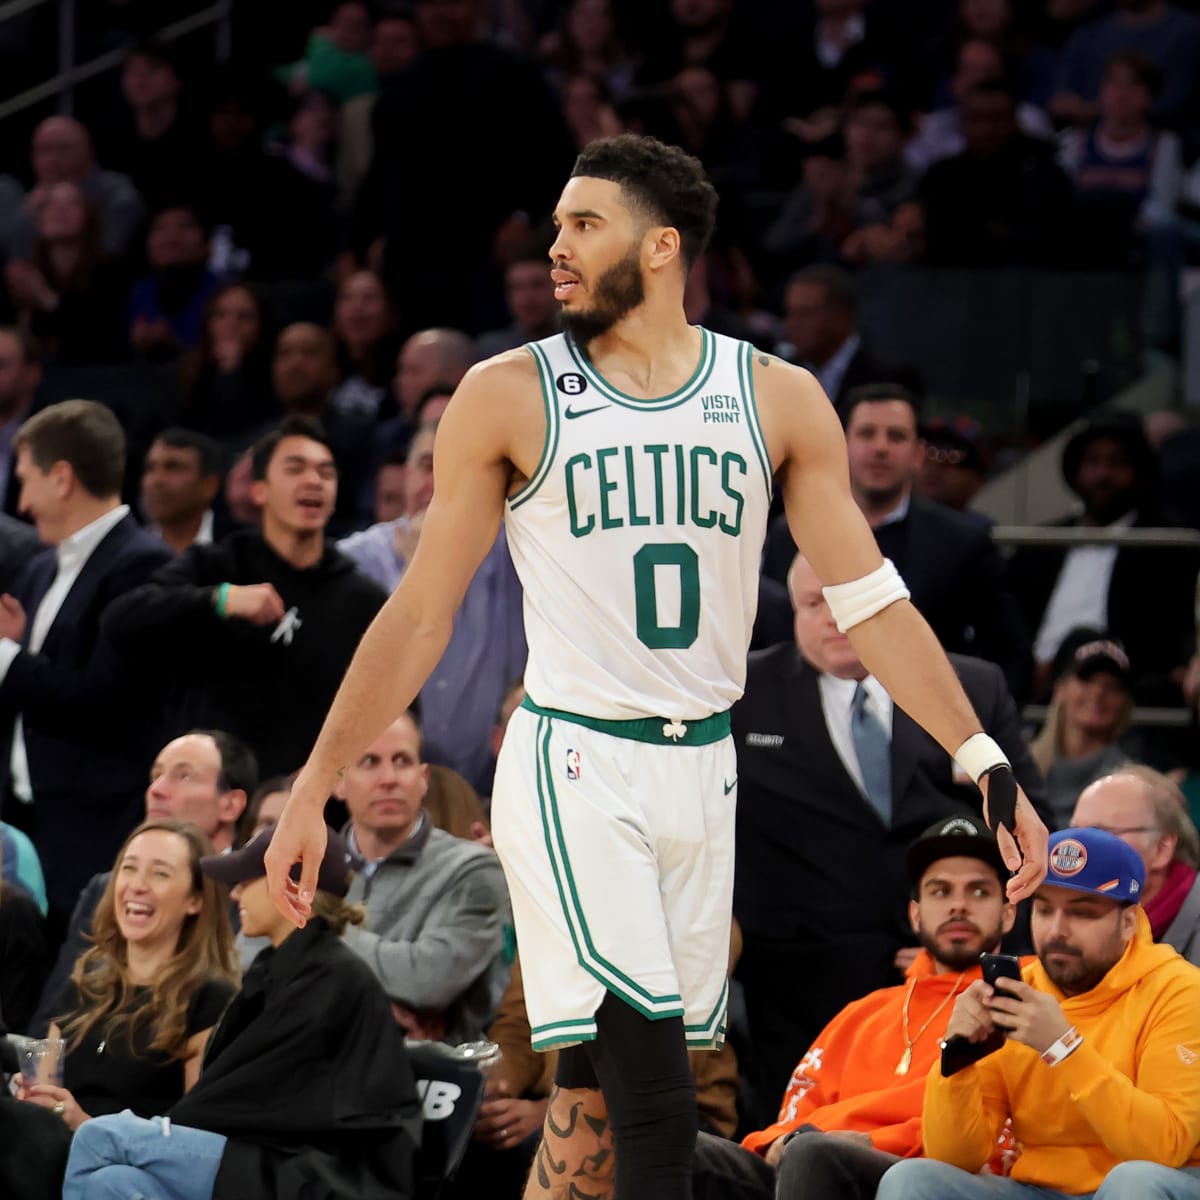 Al Horford: Boston Celtics big man's NBA Finals appearance